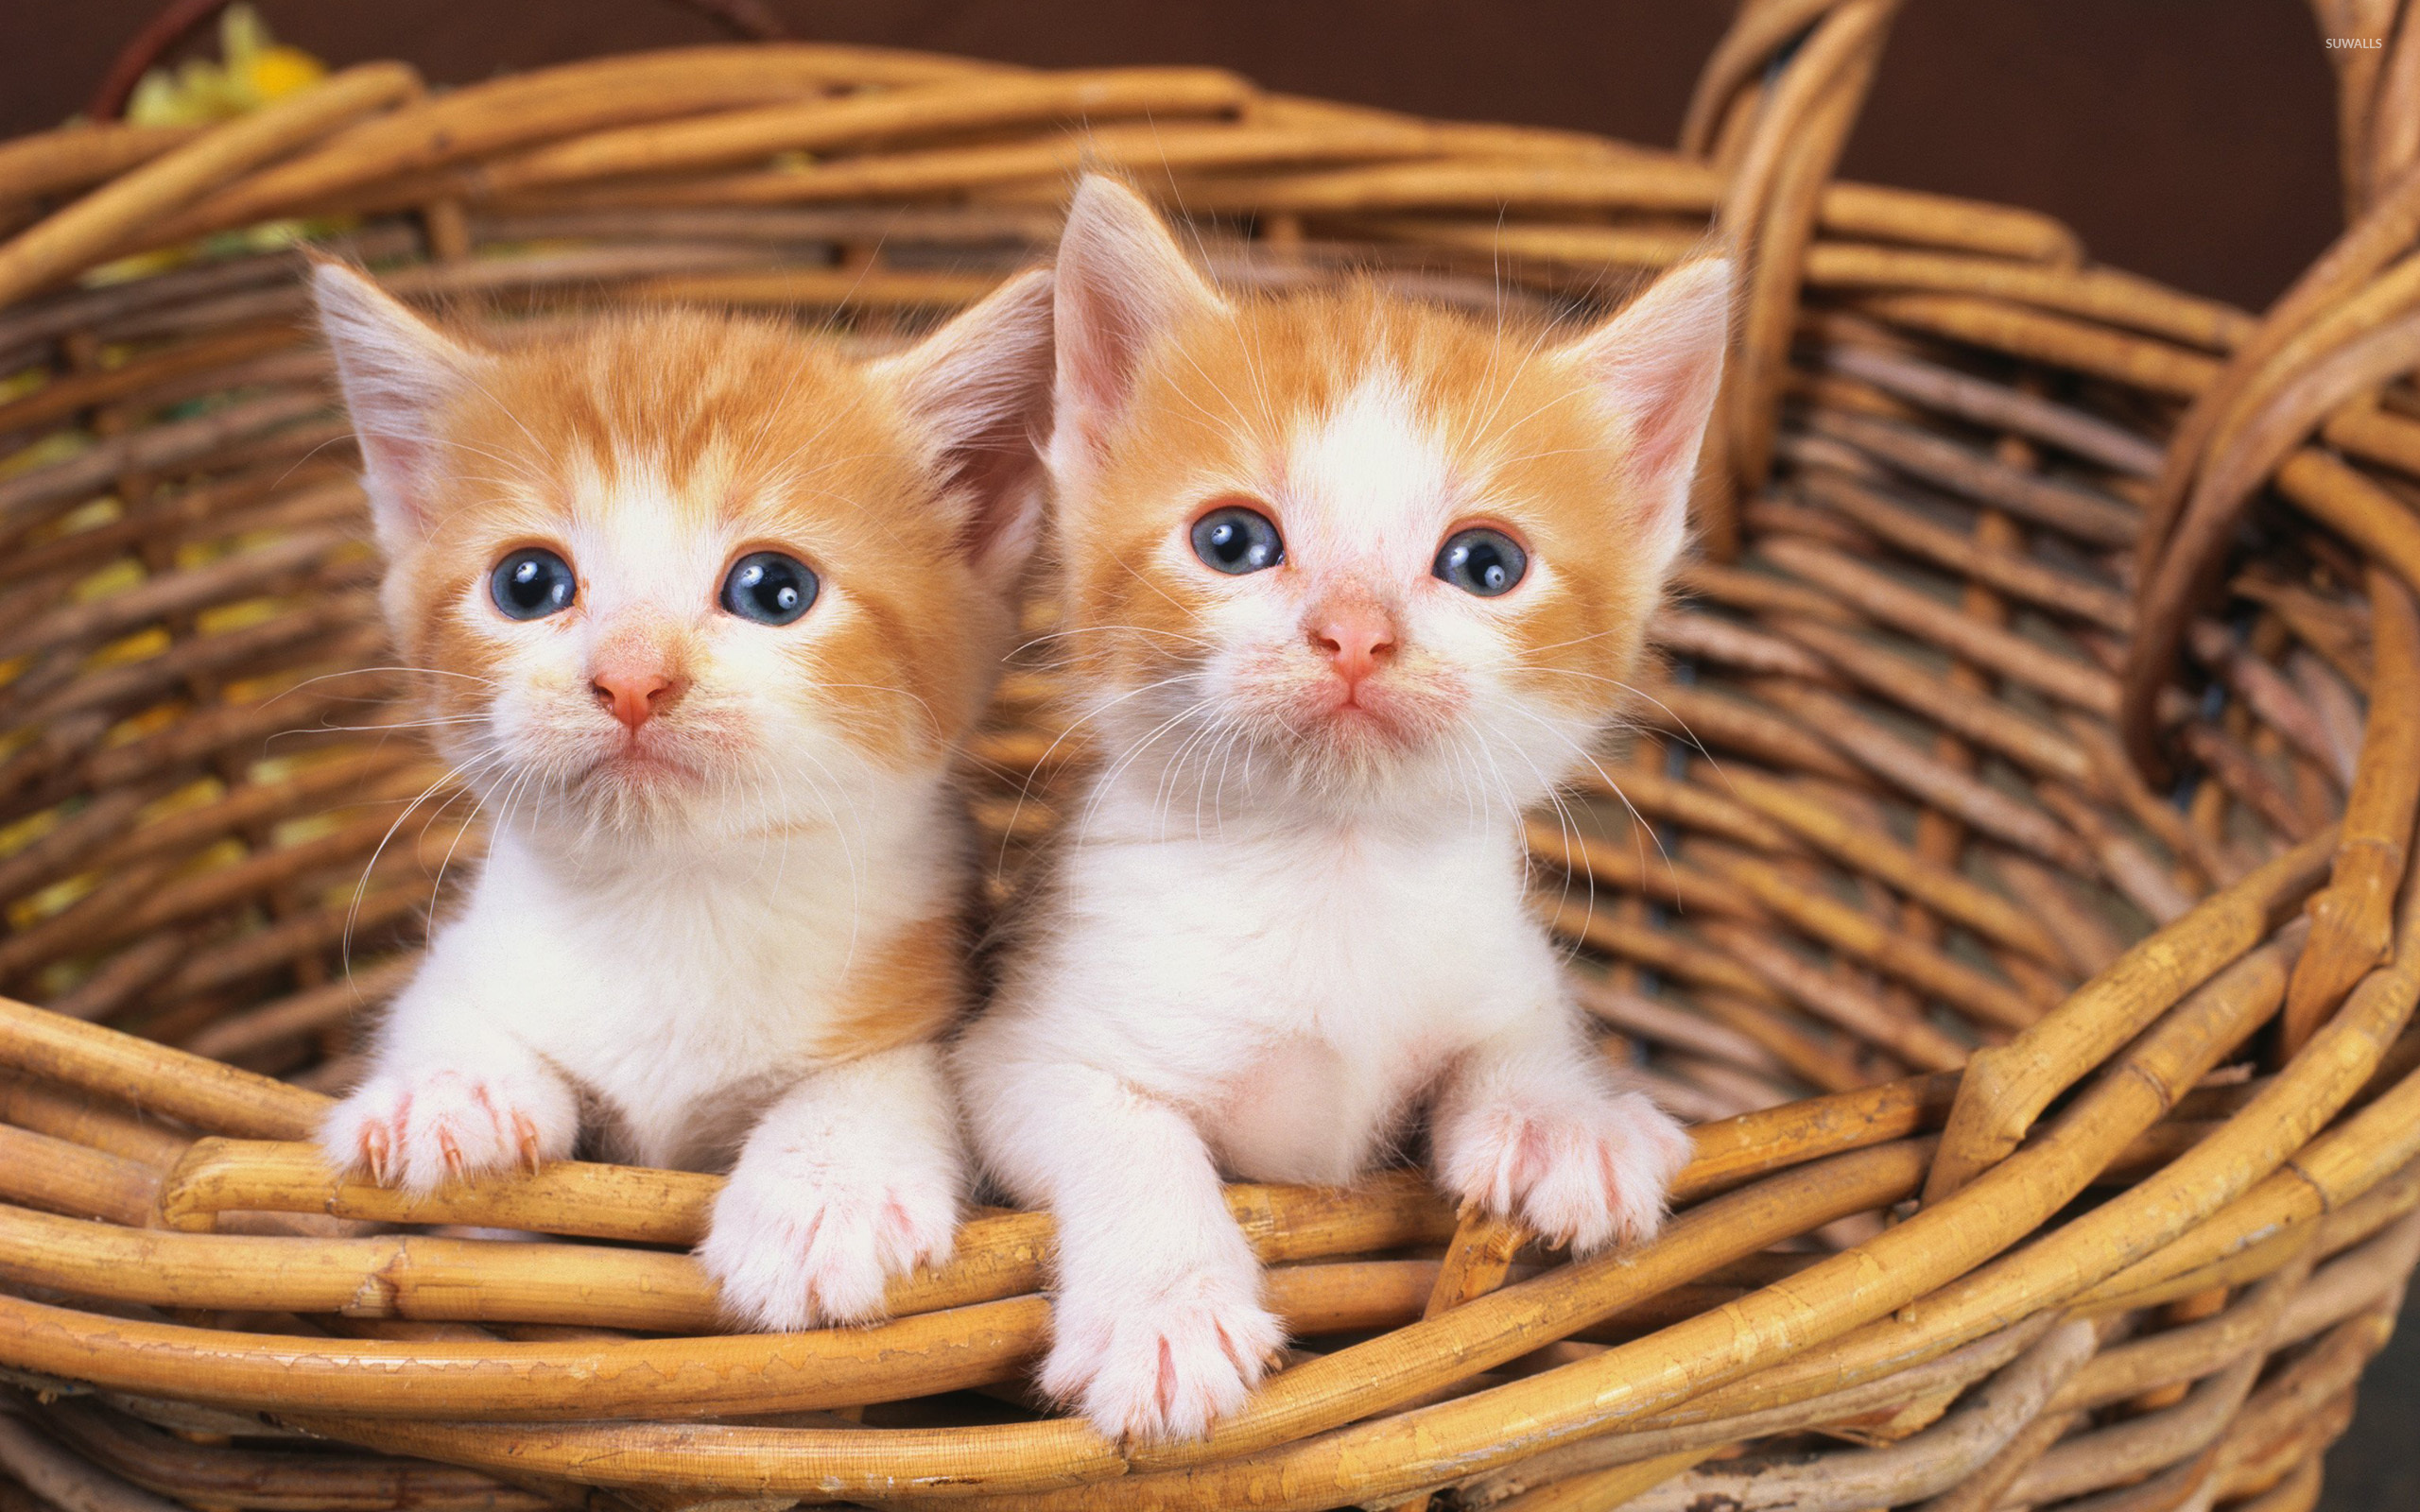 cute-kittens-in-a-basket-46860-2560x1600.jpg